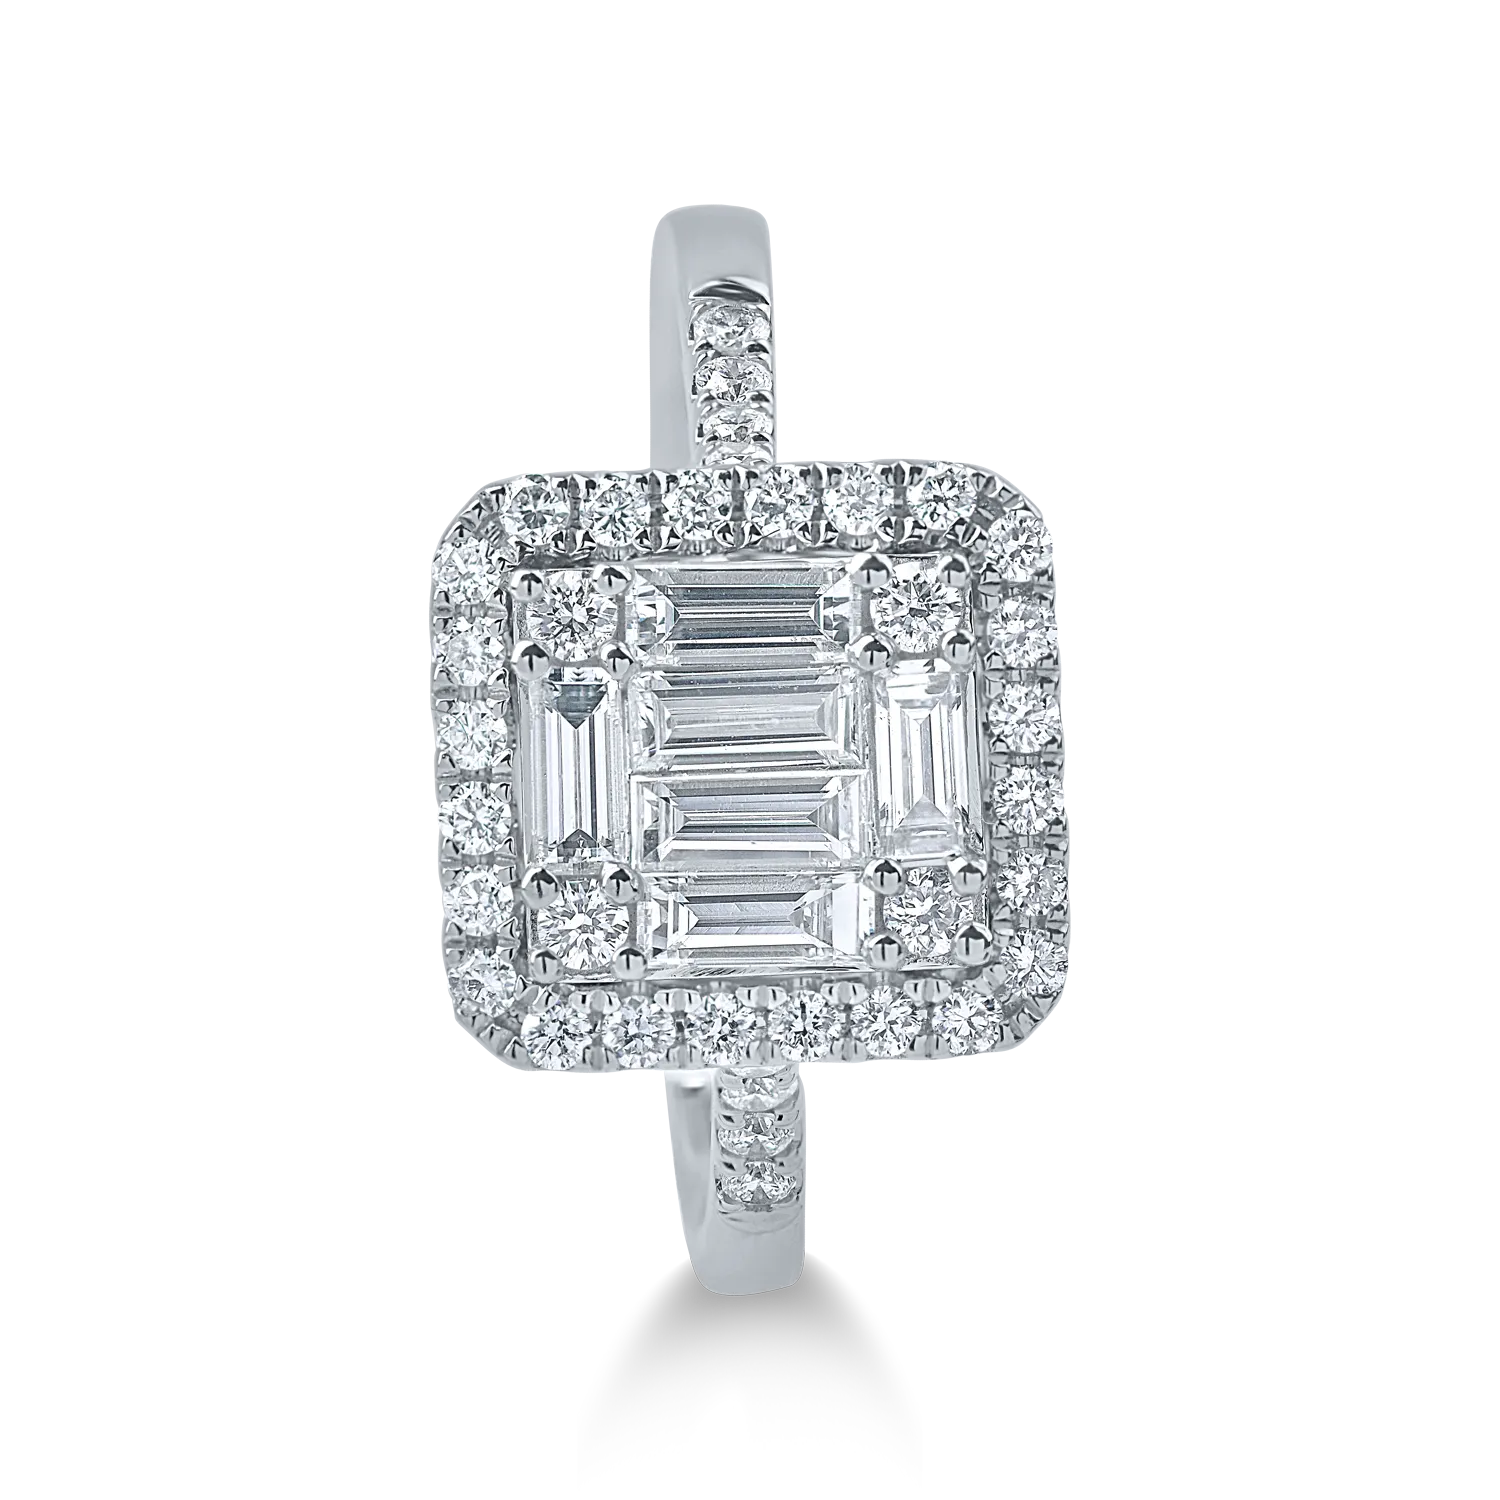 Fehérarany gyűrű 0.8ct gyémántokkal